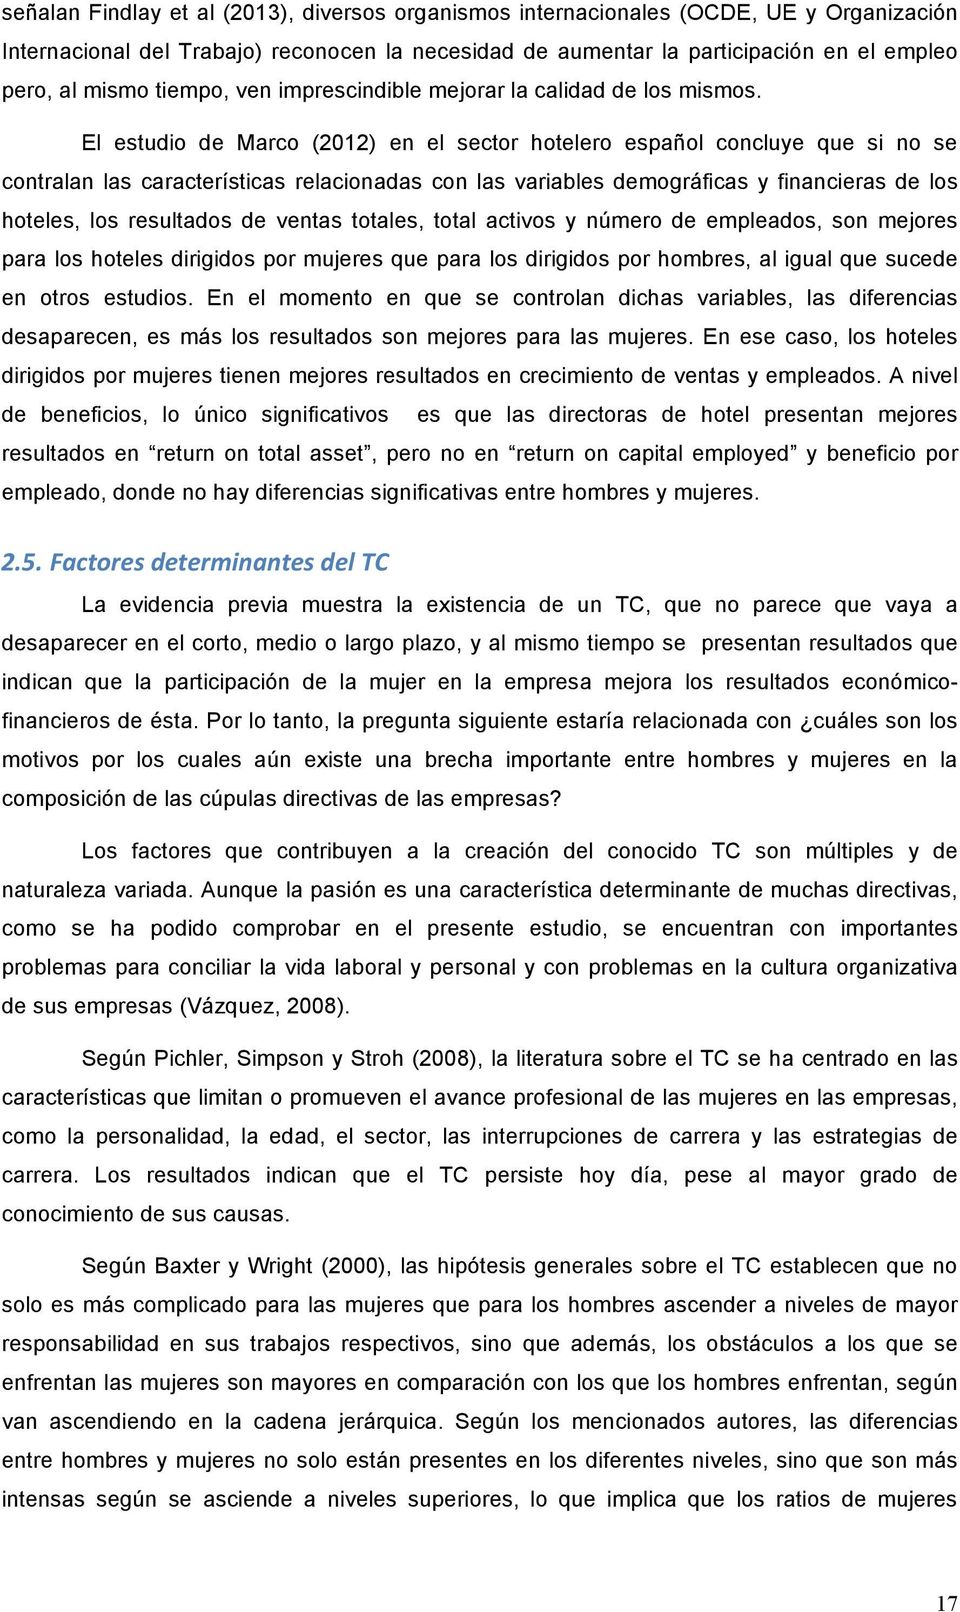 El estudio de Marco (2012) en el sector hotelero español concluye que si no se contralan las características relacionadas con las variables demográficas y financieras de los hoteles, los resultados